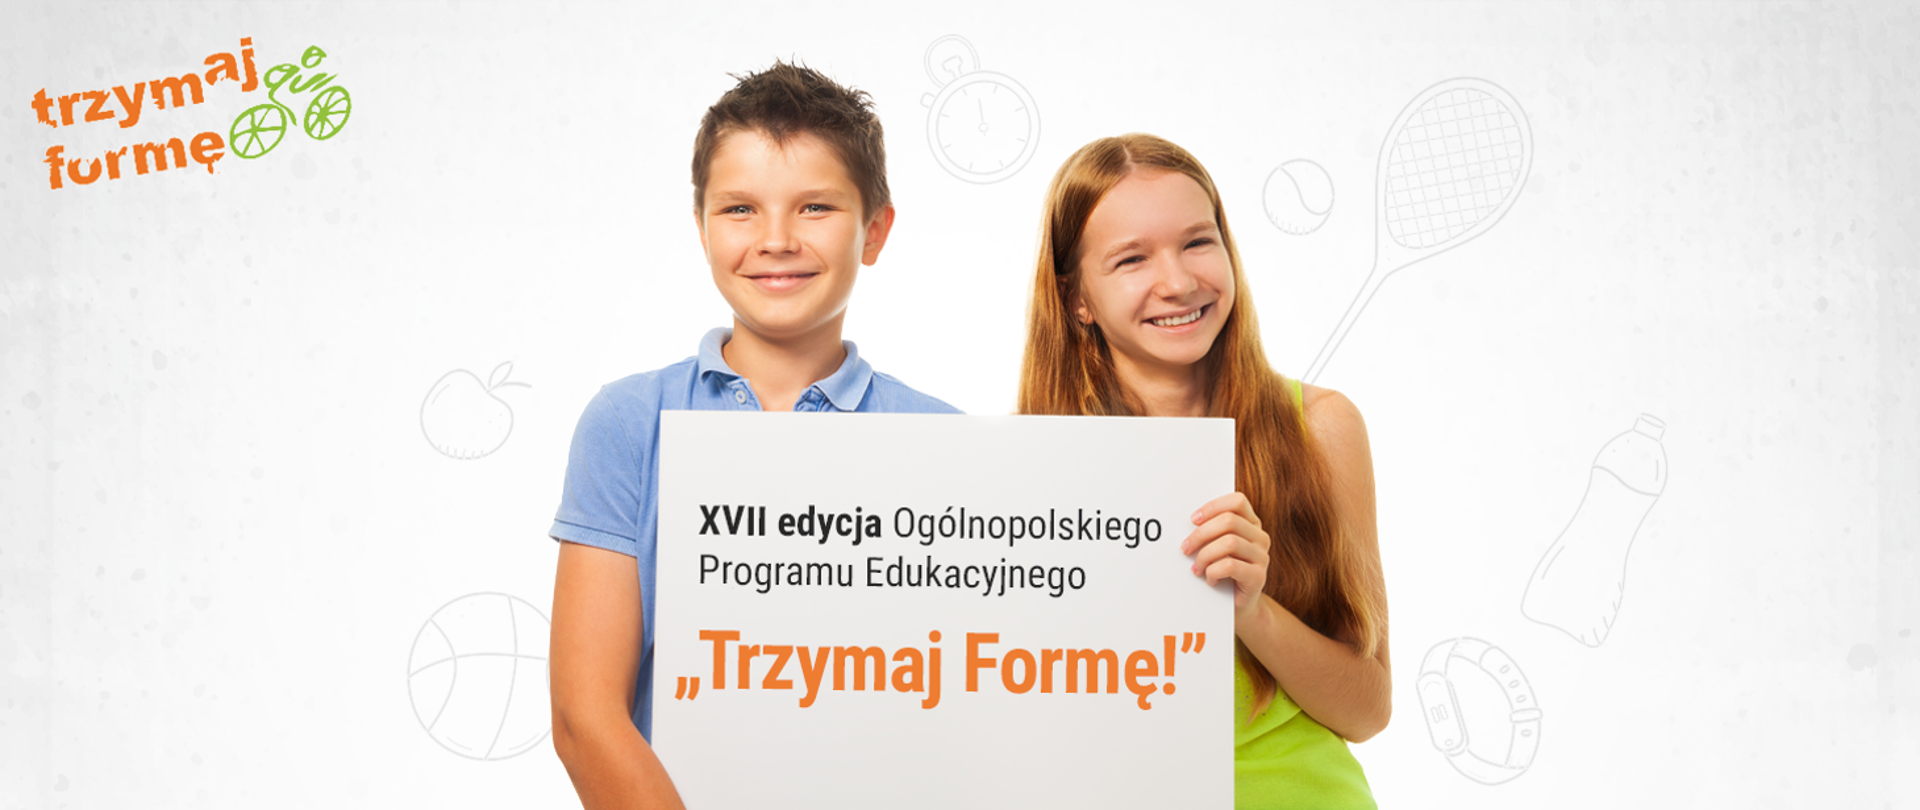 Ogólnopolski Program Edukacyjny „Trzymaj Formę!” po raz XVII